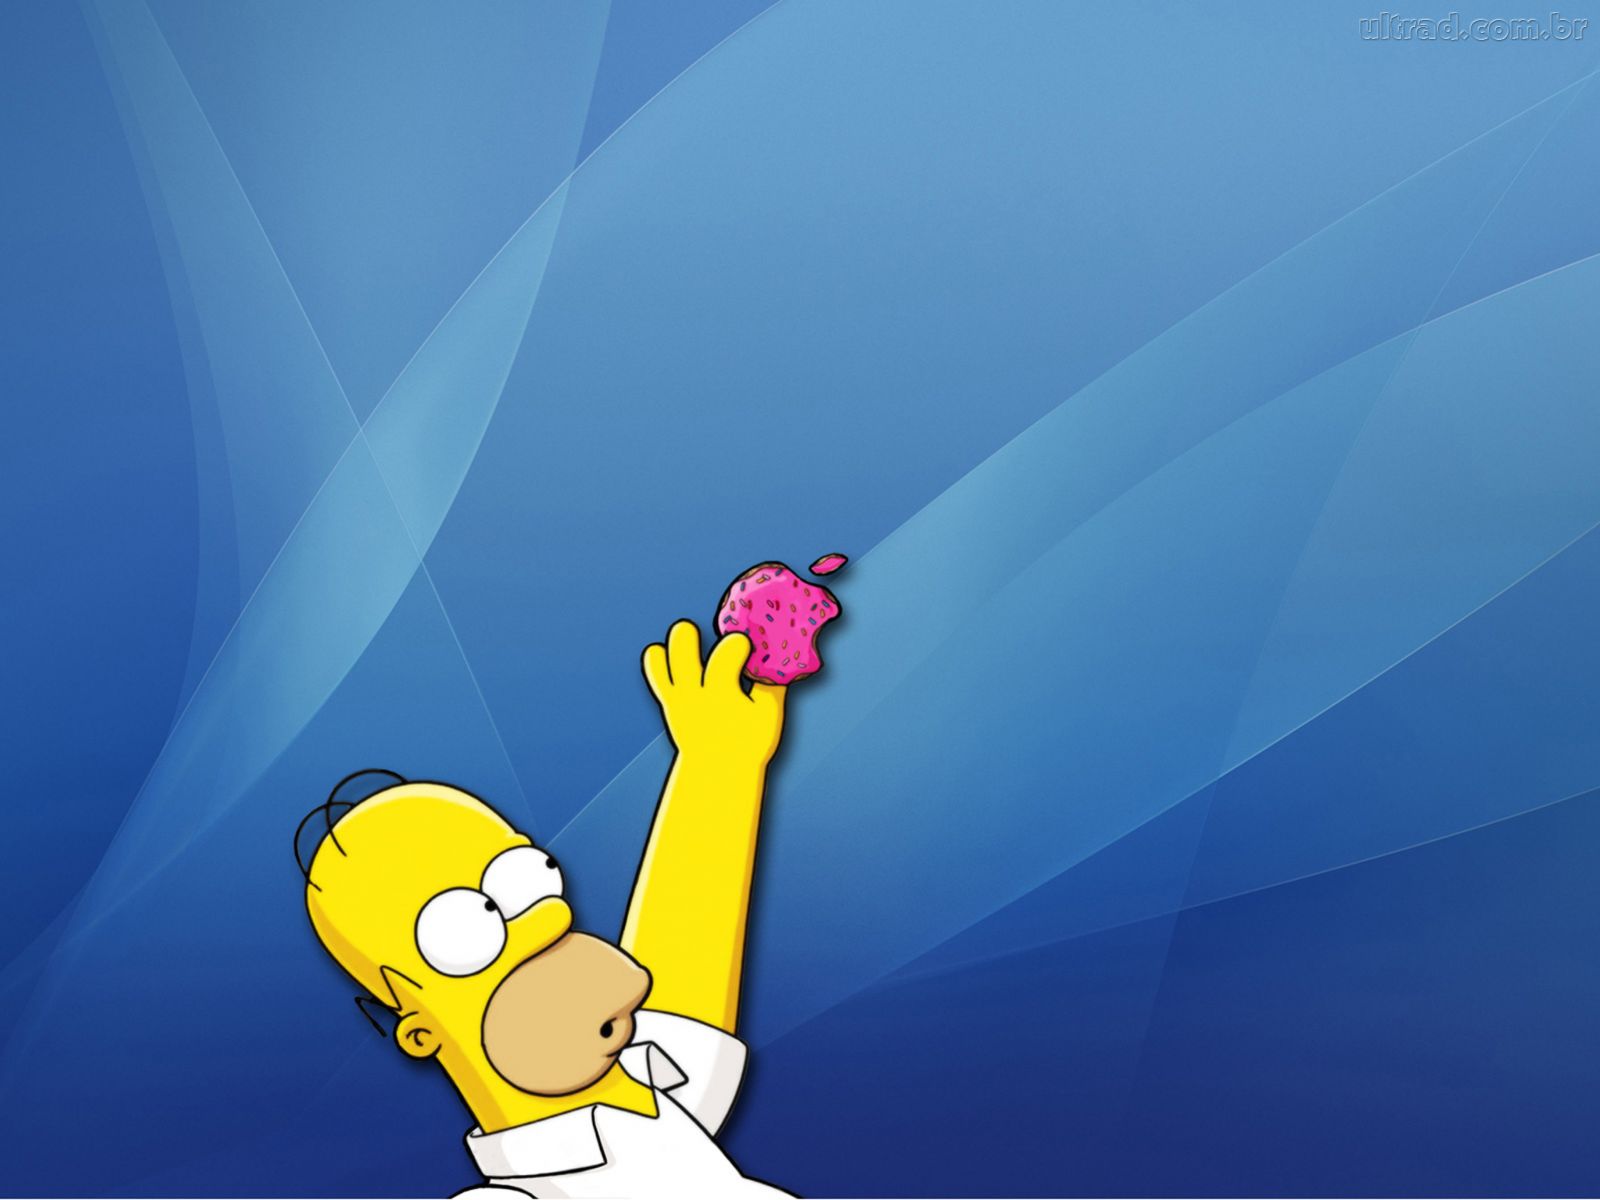 Da Apple Nos Simpsons Papel De Arroz Para Bolo Homer Simpson